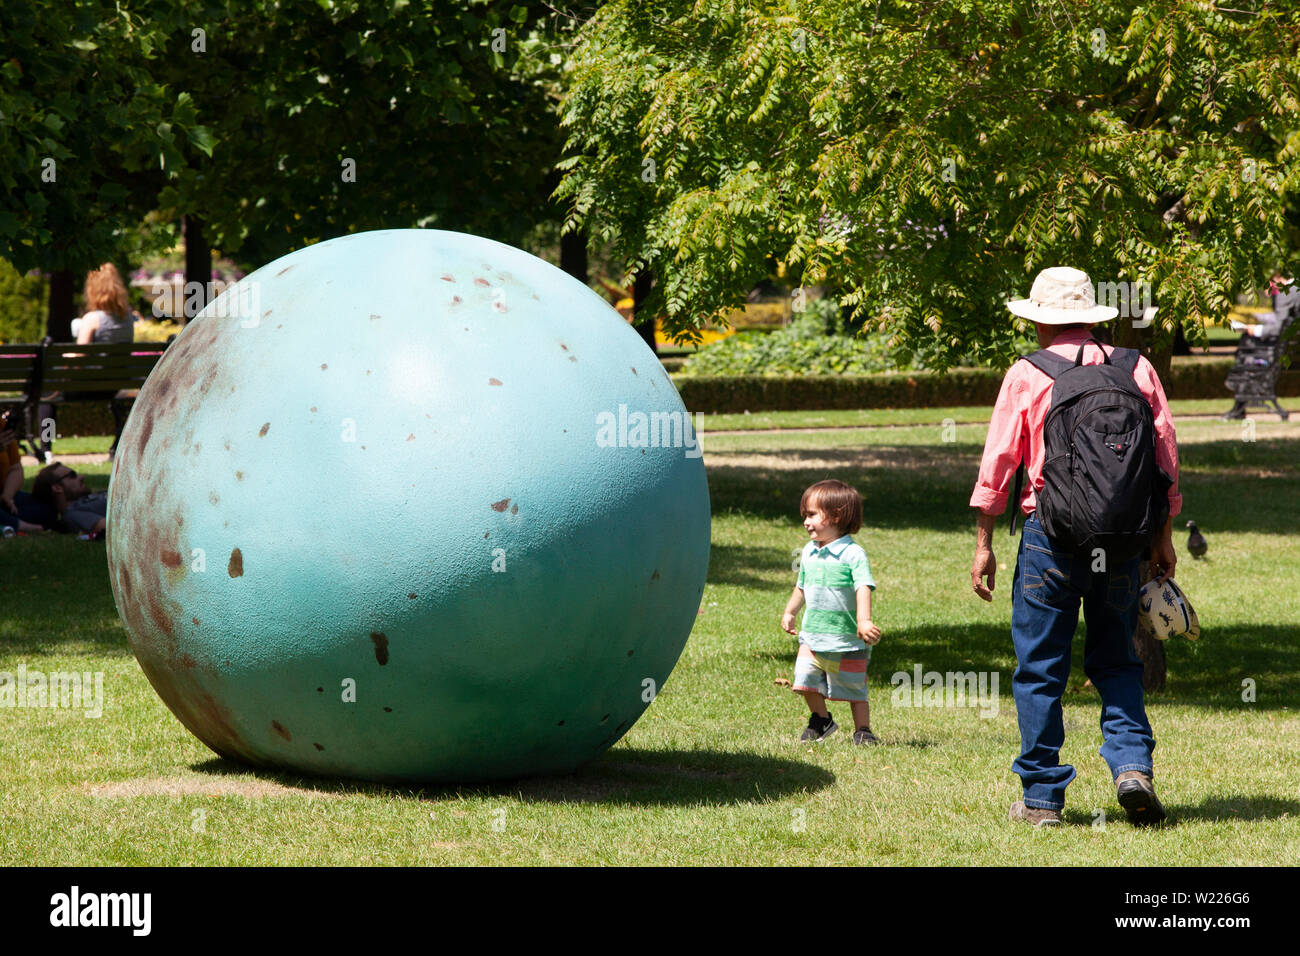 Im Regent's Park 23 Skulpturen sind auf Anzeige für Frieze Skulptur, bis zum 6. Oktober 2019, einschließlich dieser Riese Ei von Joanna Rajkowska, emittiert Geräusche wenn Sie aufmerksam zuhören. Stockfoto